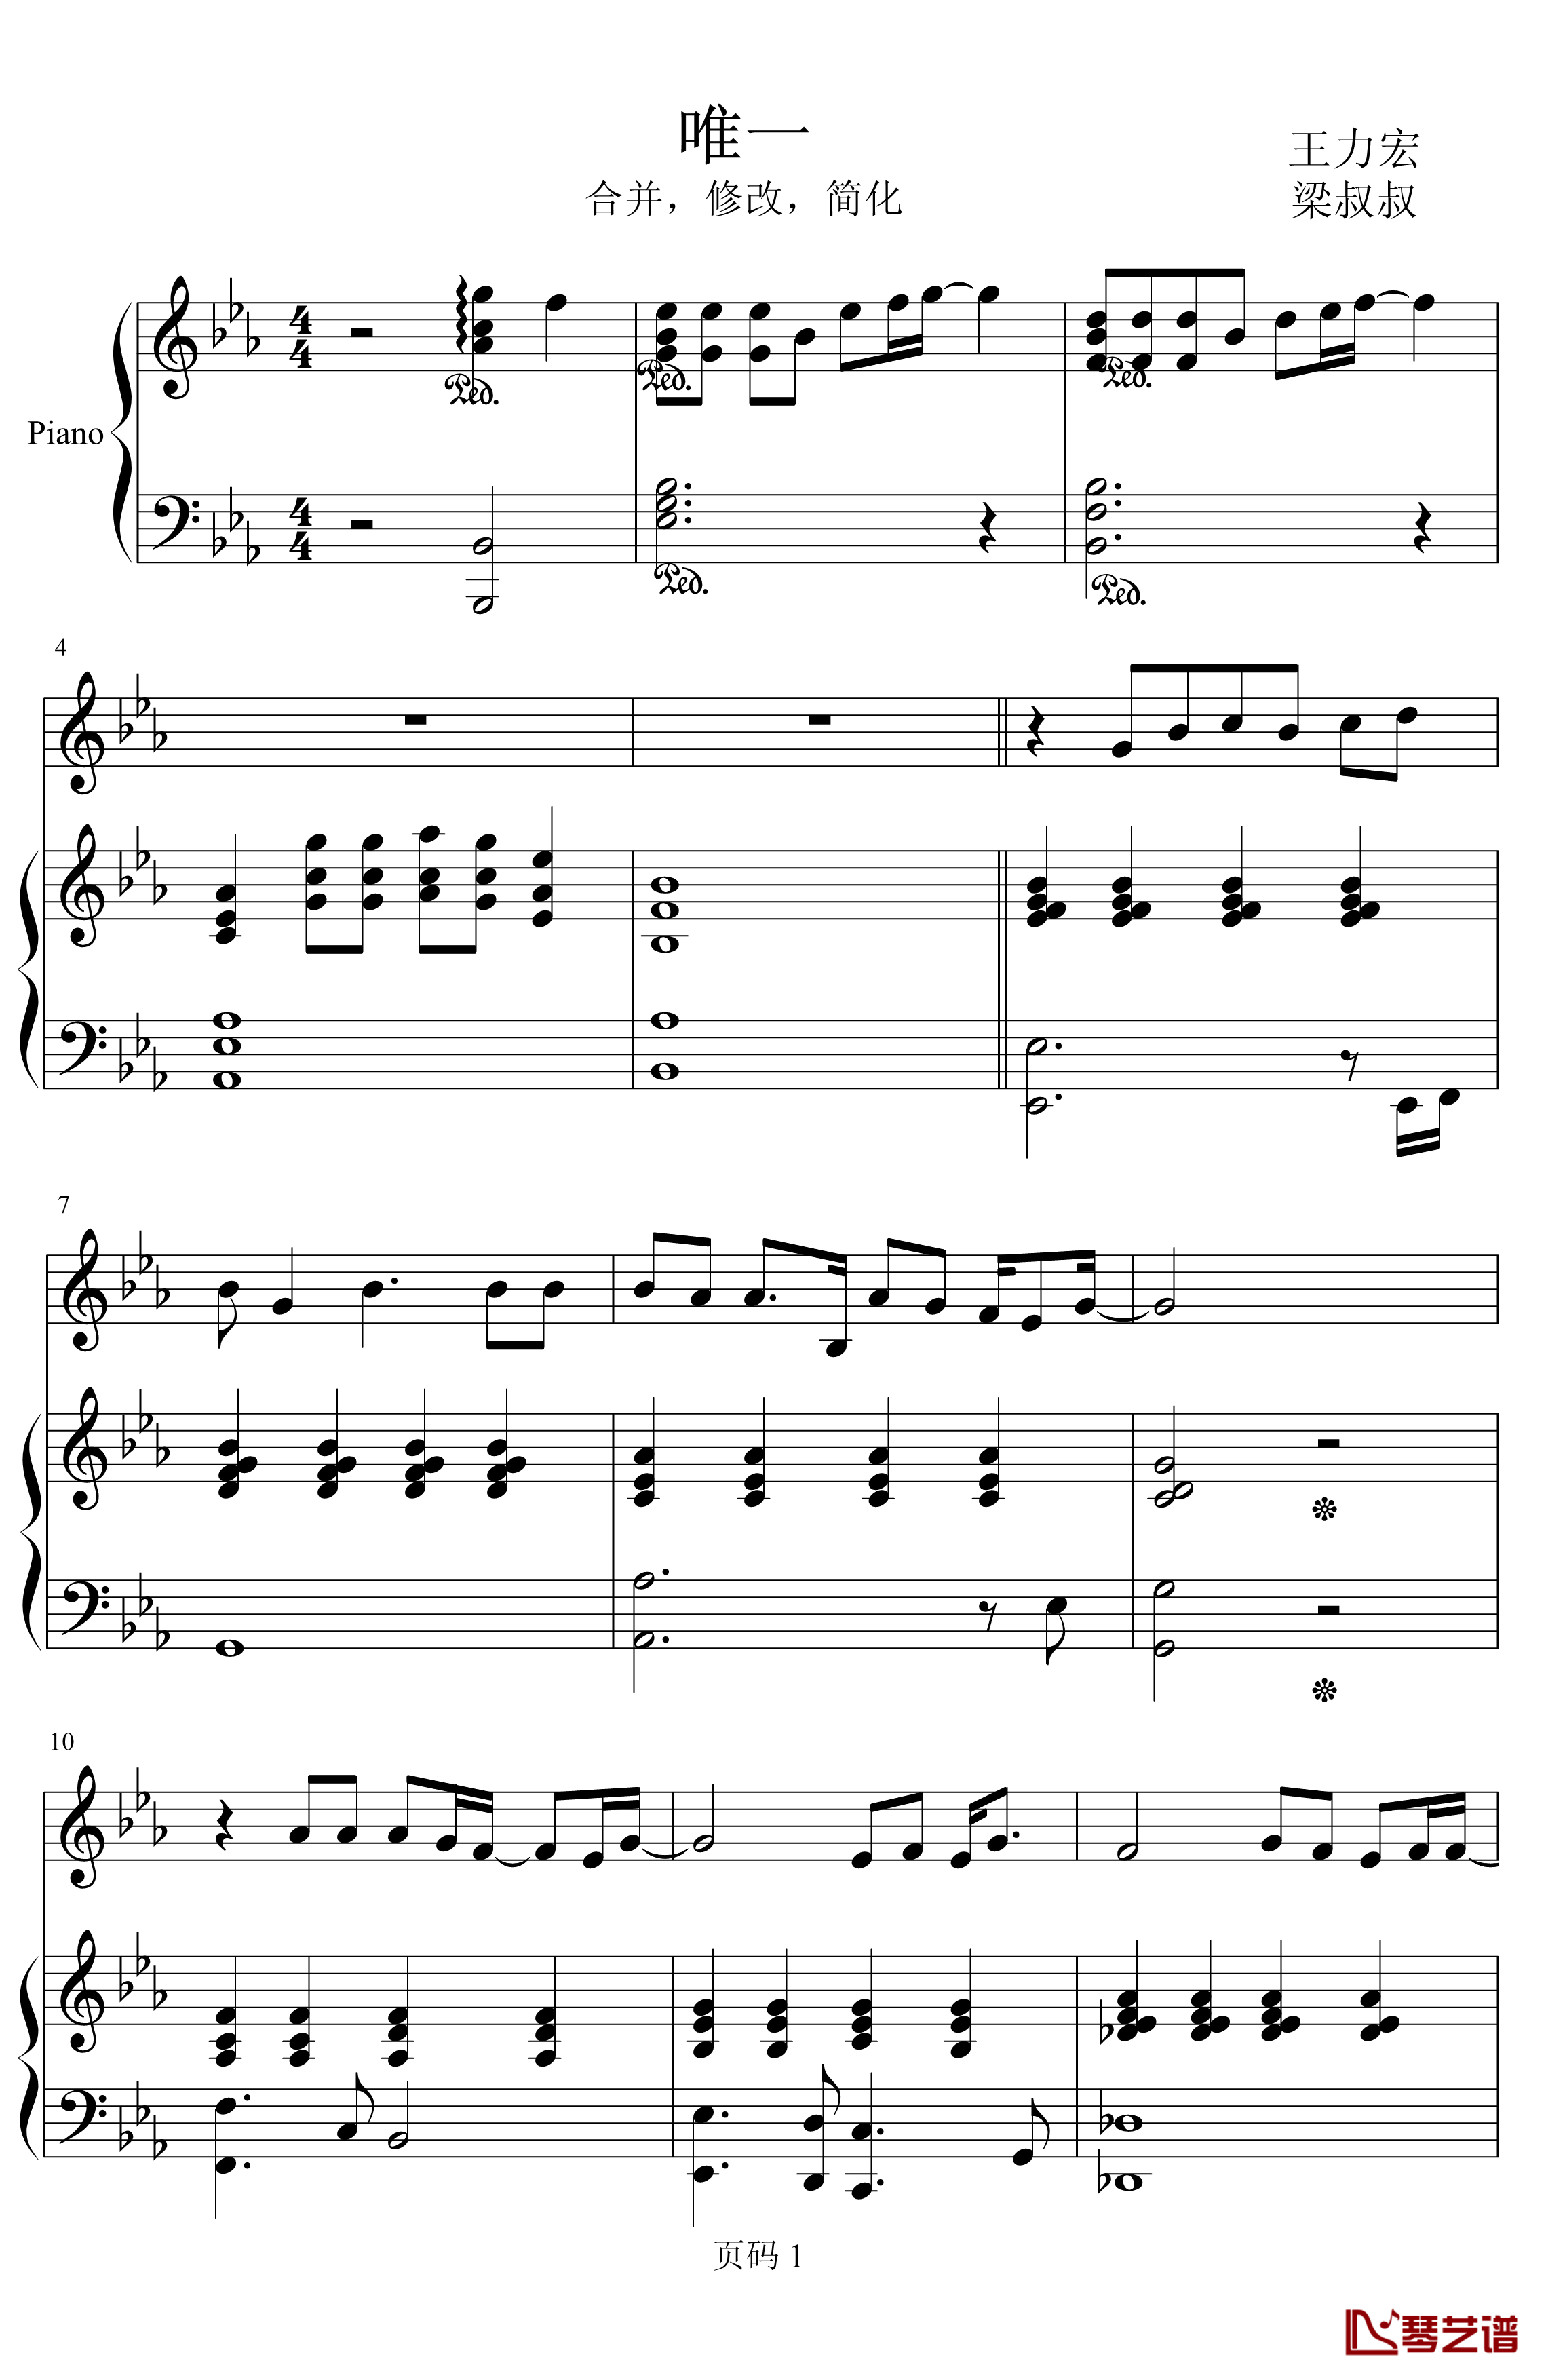 唯一钢琴谱-简化-王力宏1